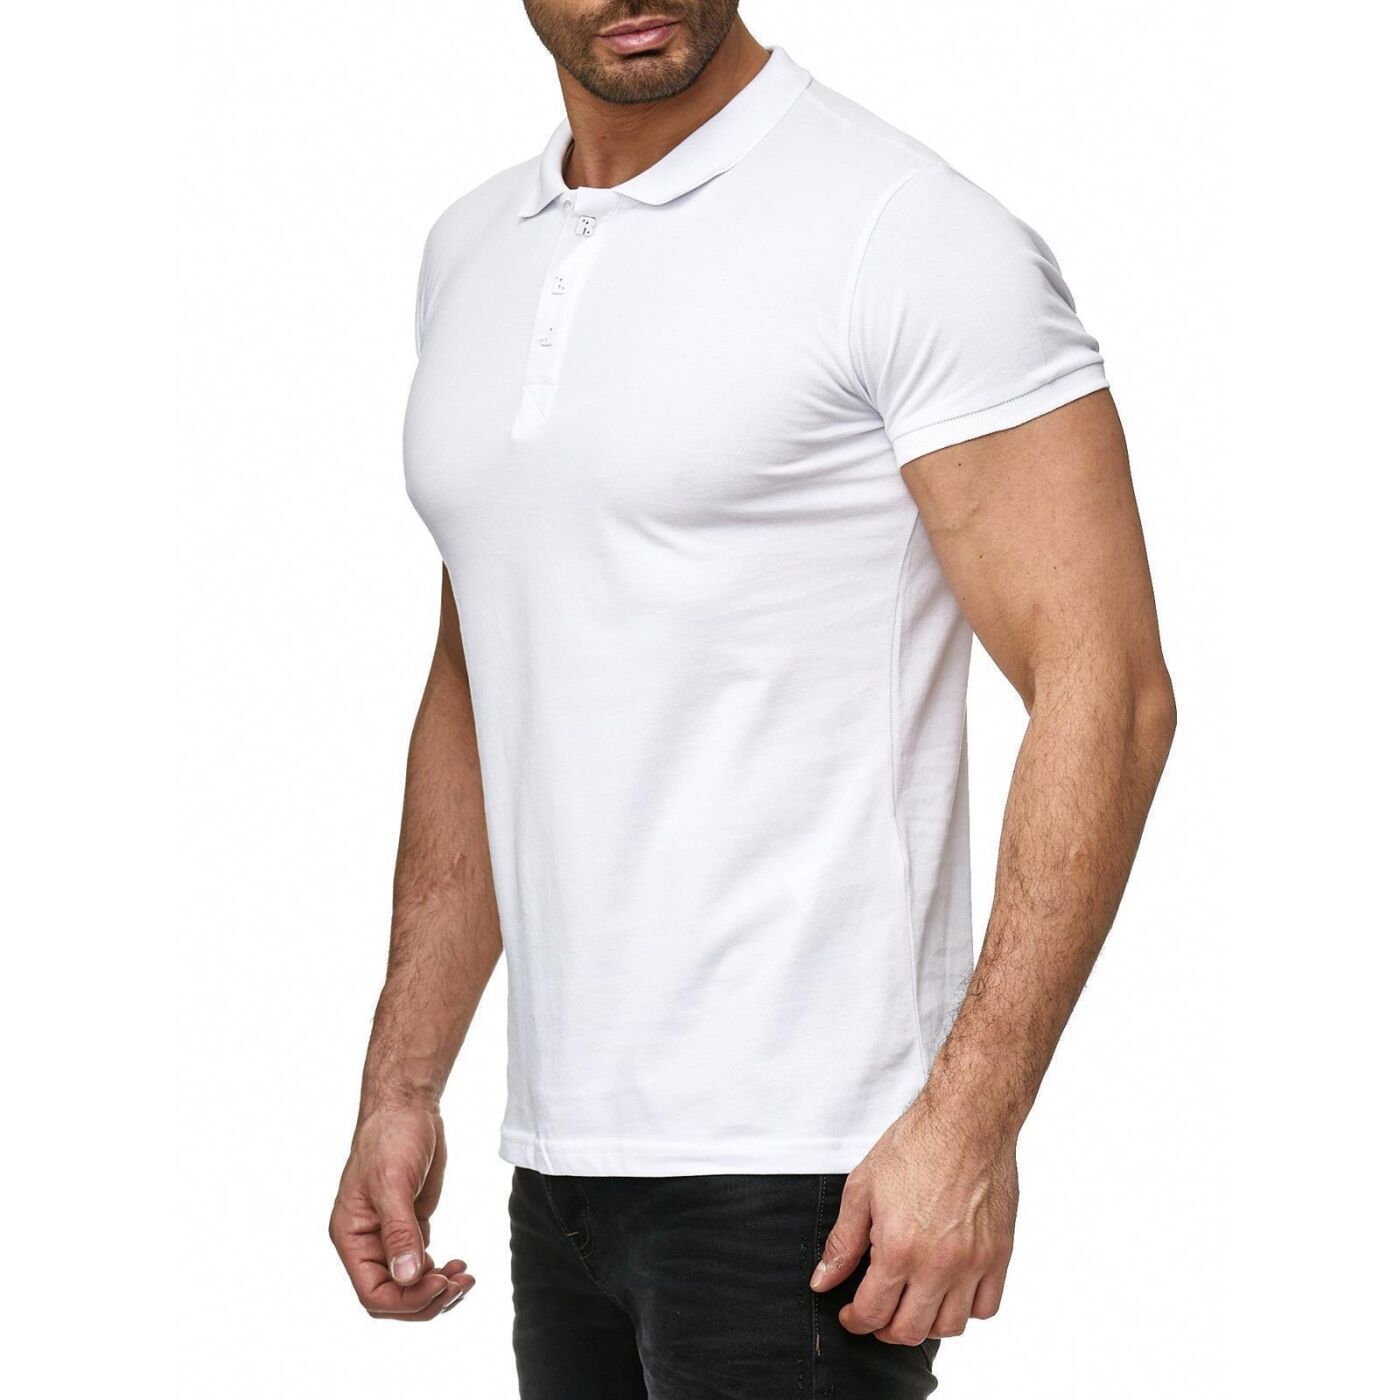 kloof Stratford on Avon Subsidie Red Bridge Herren Poloshirt T-Shirt Clean Basic Weiß XL M1242-WHITE-X,  22,90 €